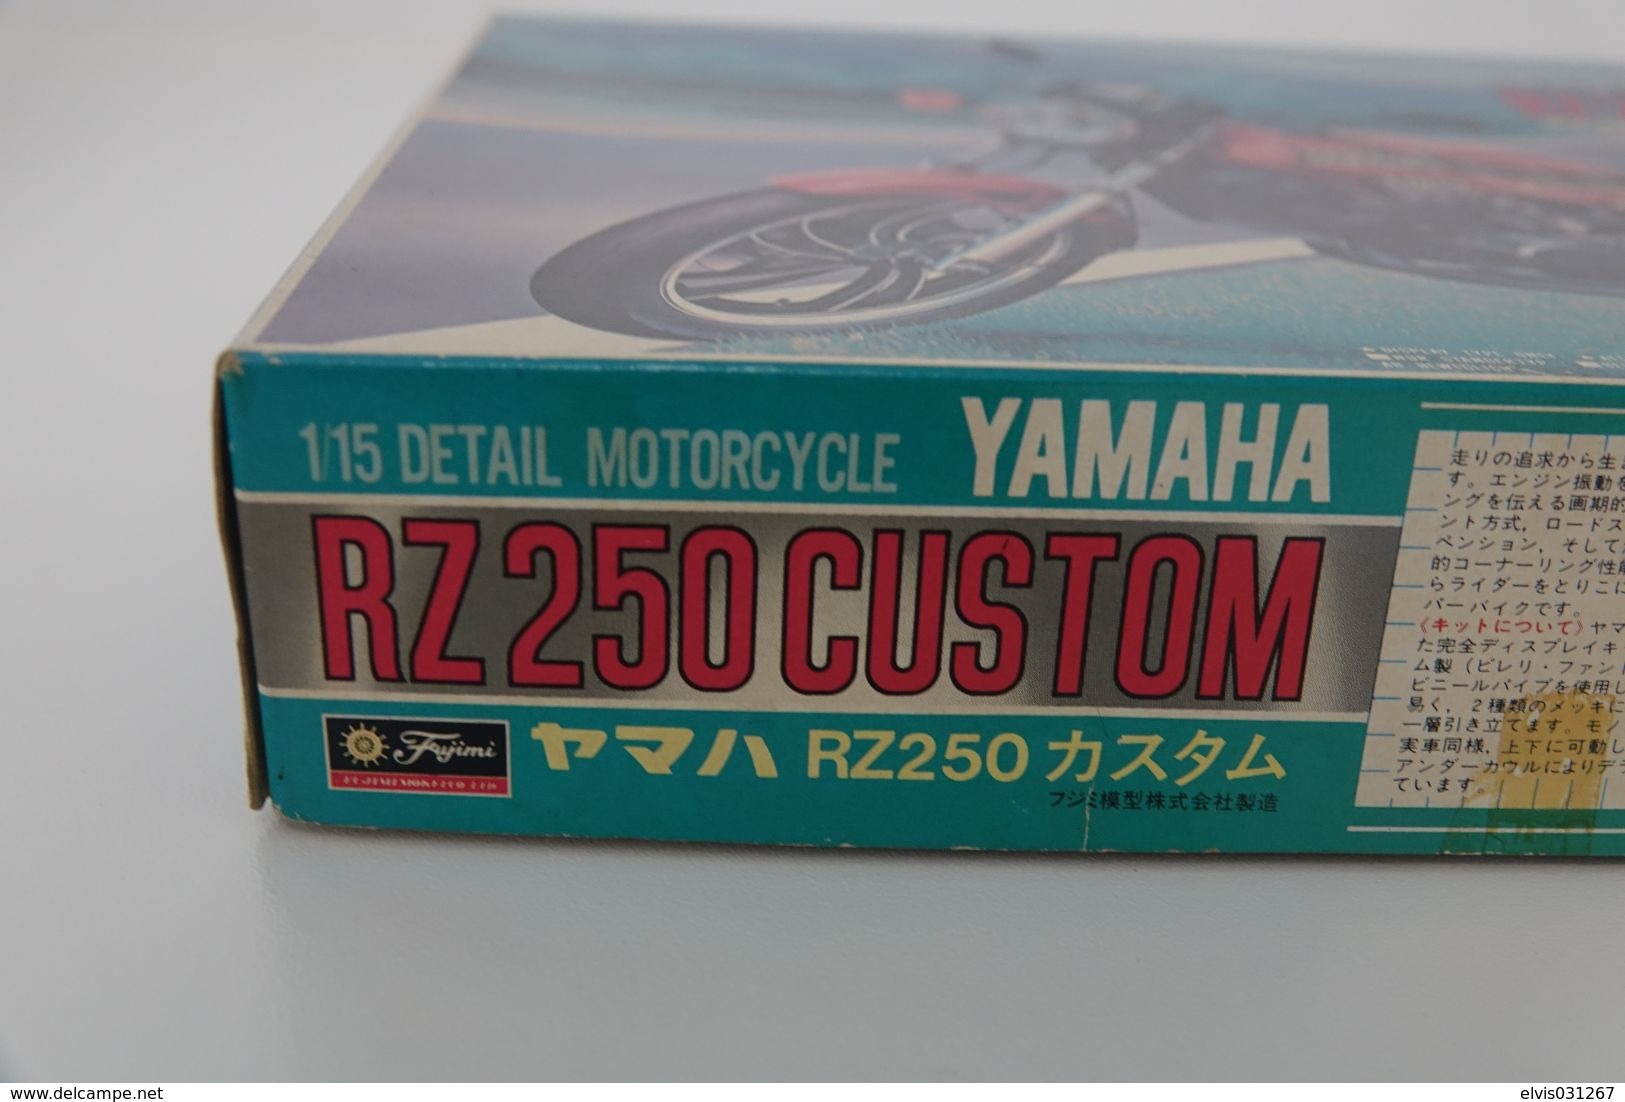 Vintage MODEL KIT : Fujimi - YAMAHA RA250 CUSTOM, Series 11 , Sealed NOS MIB, Scale 1/15, Vintage 1980's - Scala 1:32